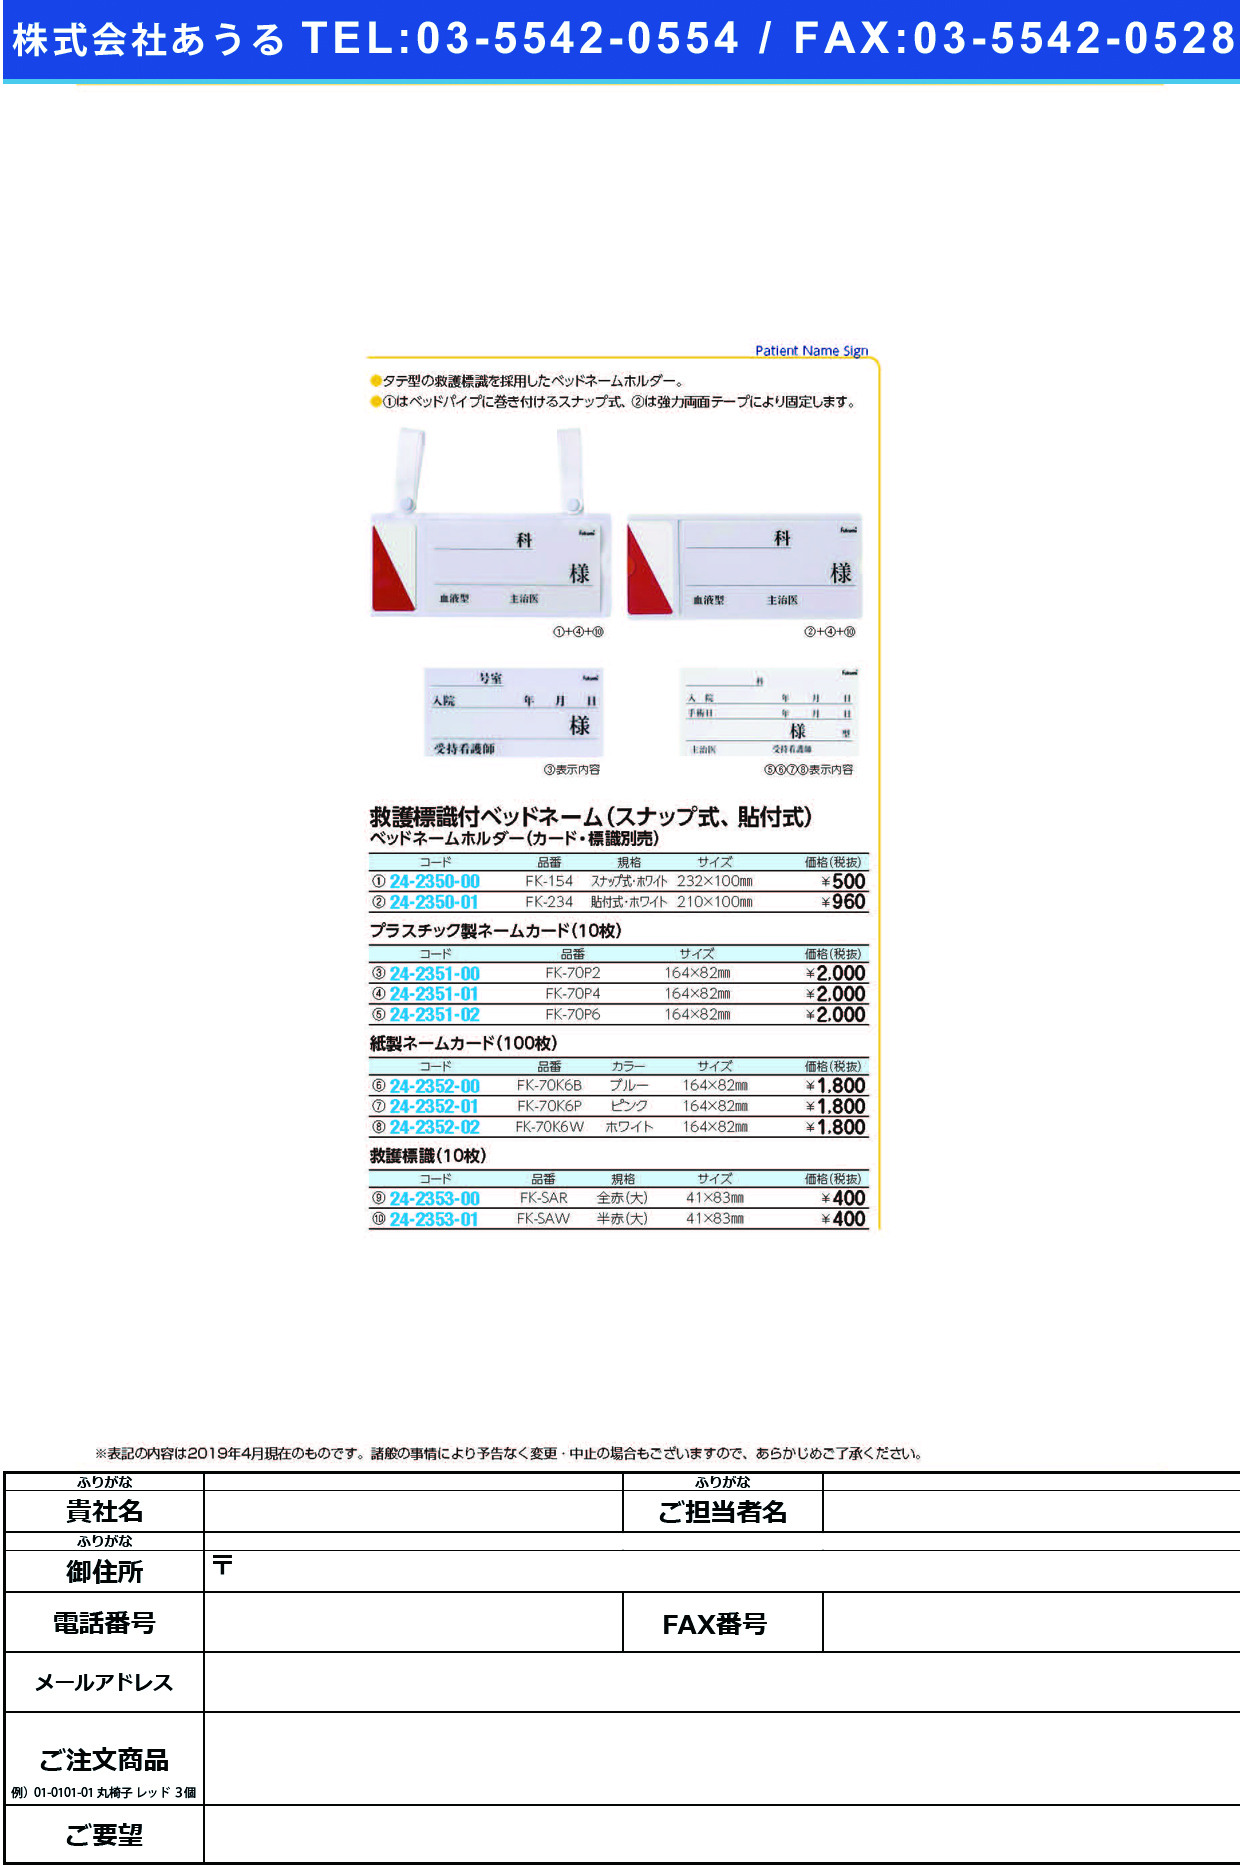 (24-2351-00)ネームカード（プラ） FK-70P2(10ﾏｲｲﾘ) ﾈｰﾑｶｰﾄﾞ【1束単位】【2019年カタログ商品】